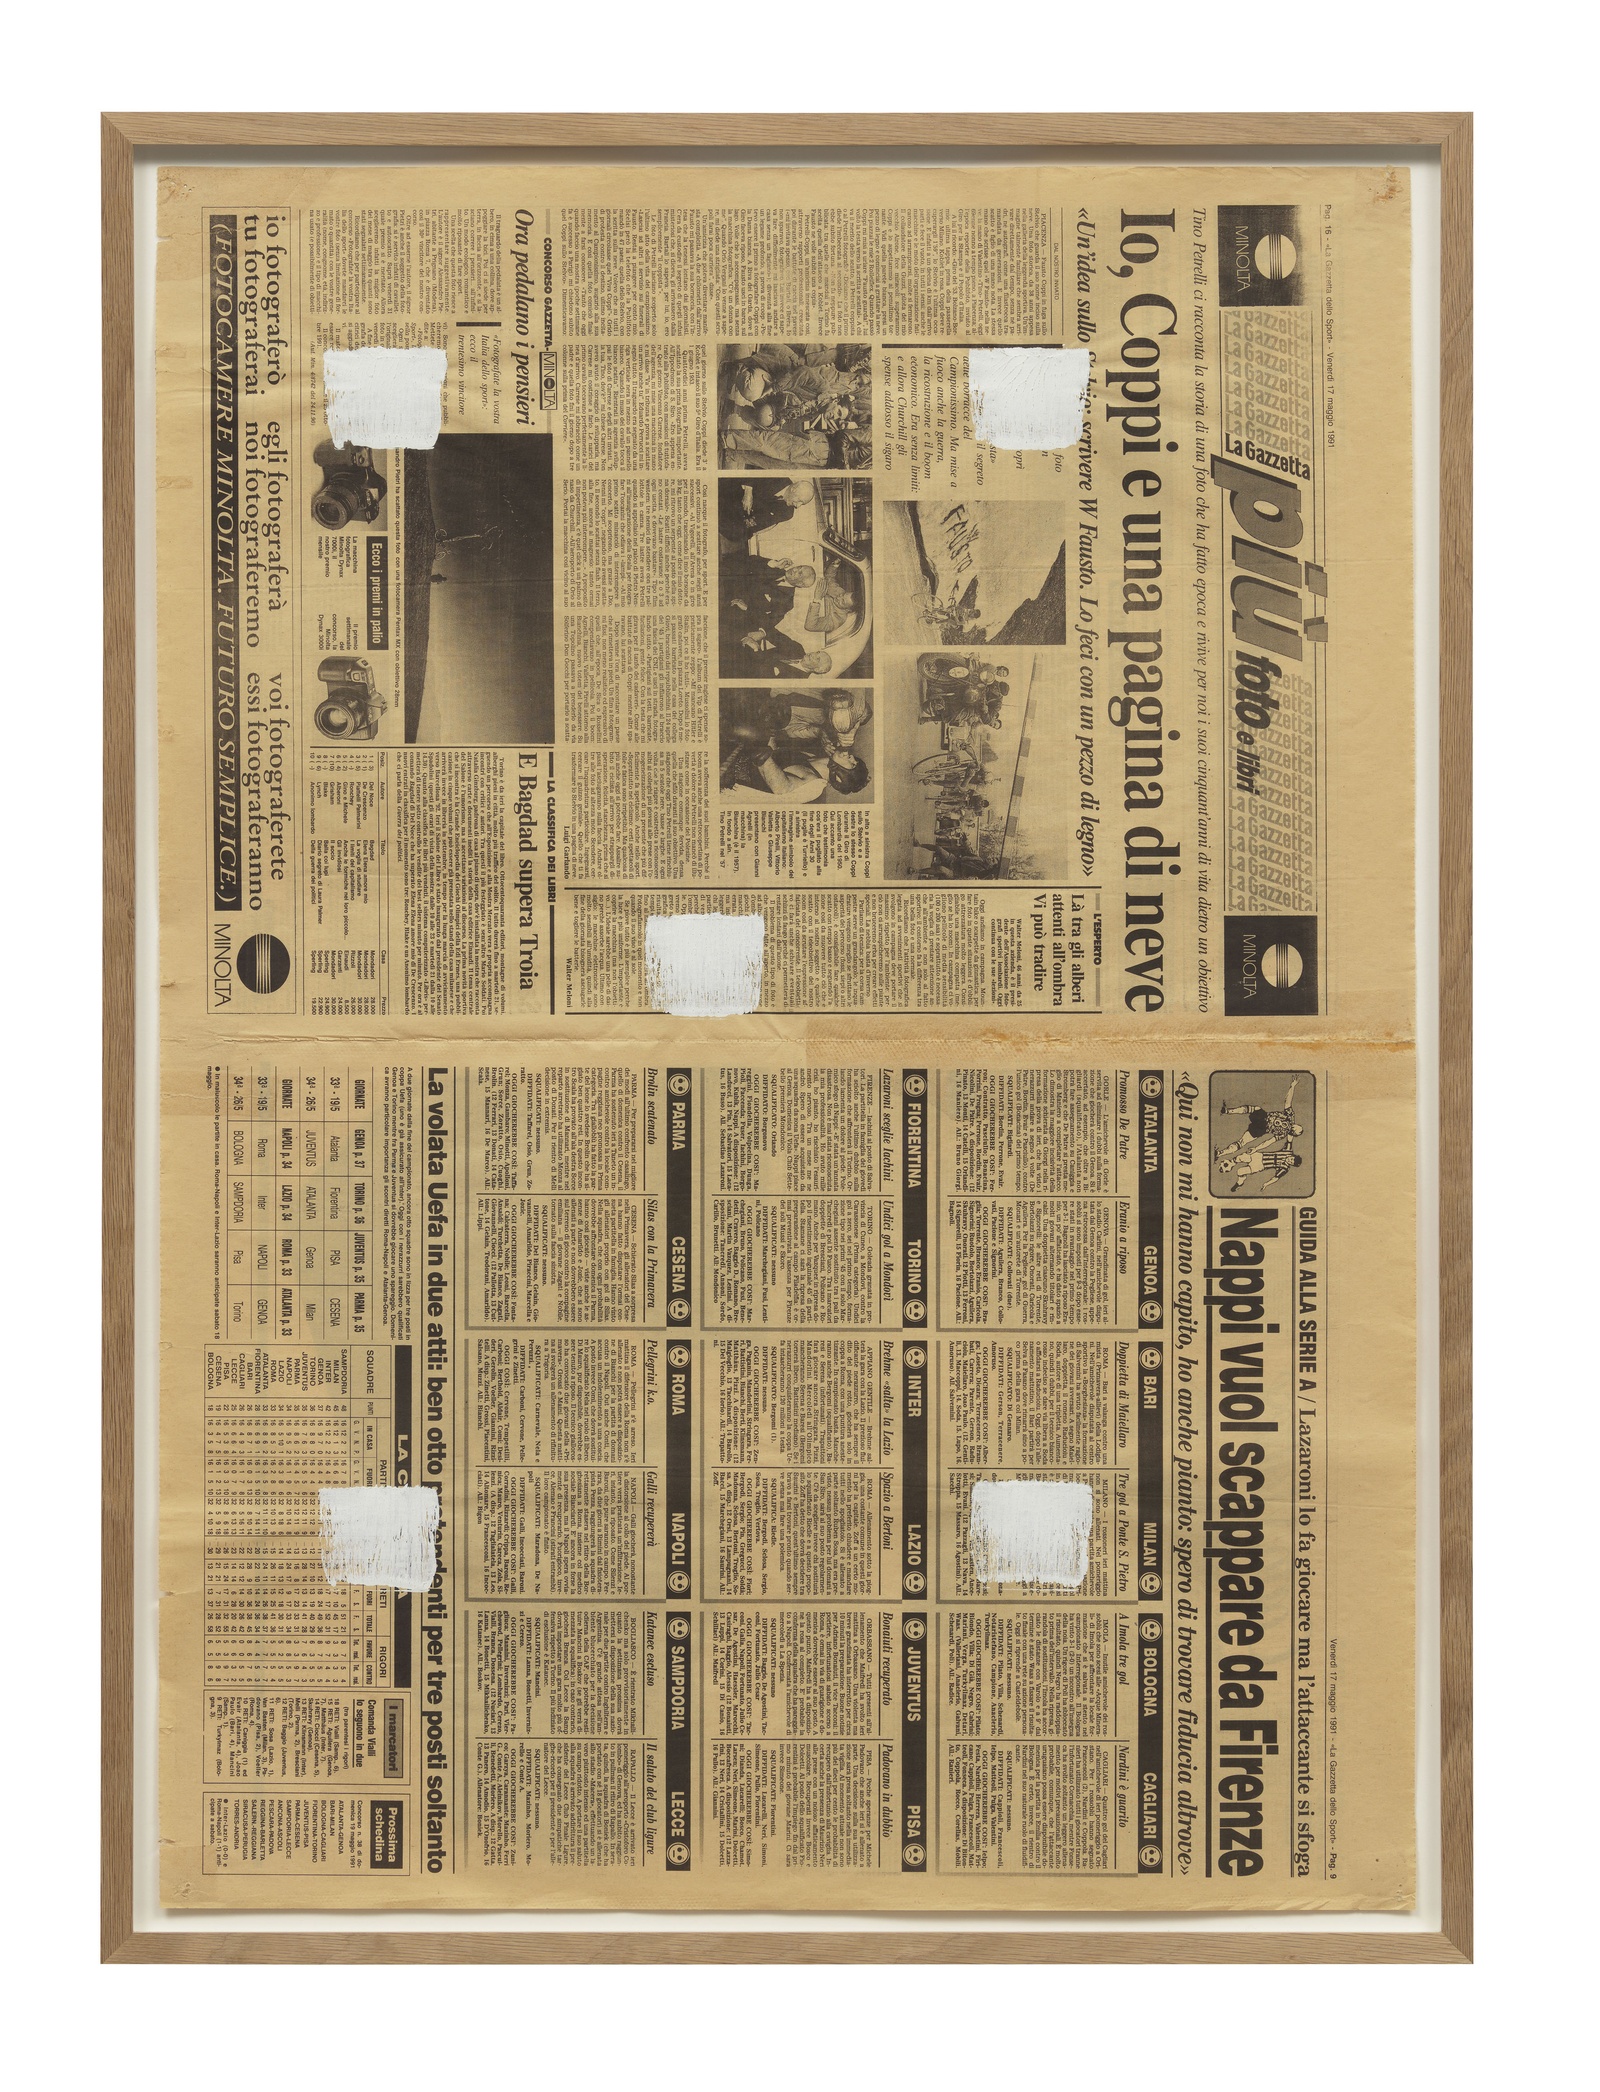 Niele ToroniEmpreintes de pinceau n° 50 appliquées à intervalles réguliers de 30 cm, 1991White acrylic on newspaper79 x 57.5 cm